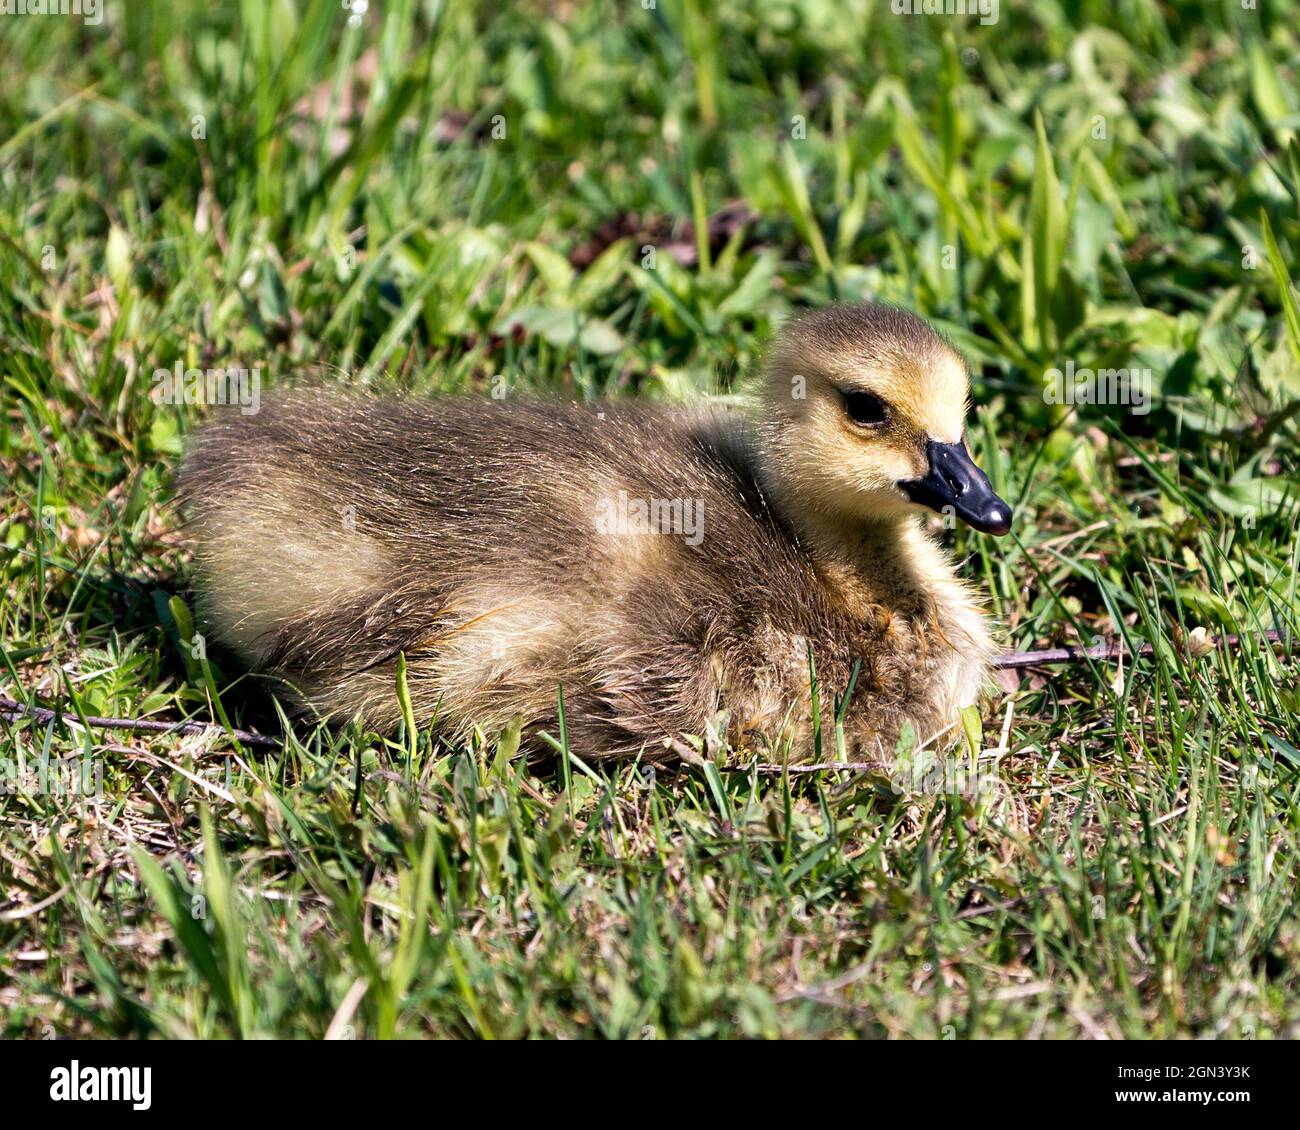 Canadian baby gosling primo piano profilo vista poggiare su erba nel suo ambiente e habitat. Immagine dell'oca del Canada. Immagine. Verticale. Foto. Foto Stock